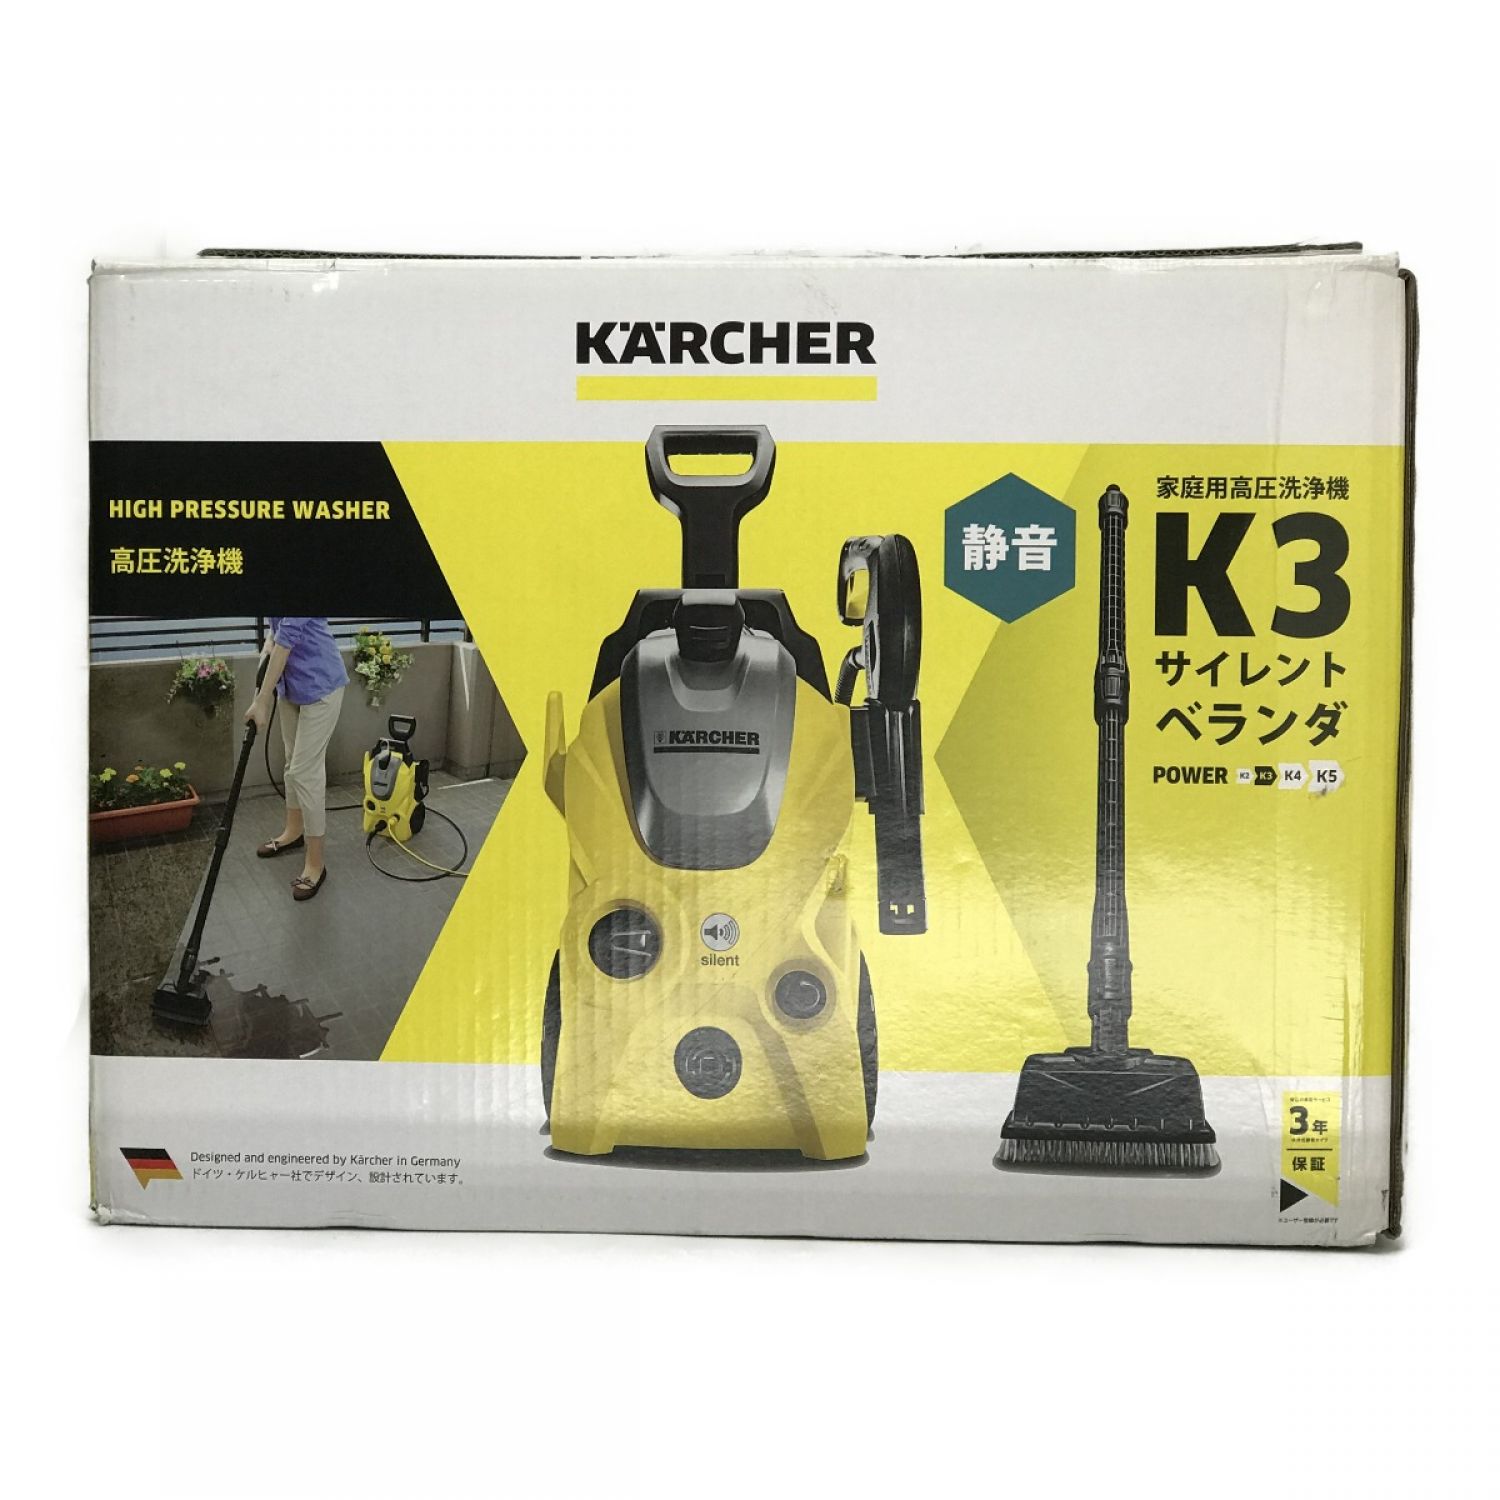 毎日更新 ケルヒャー高圧洗浄機K3 サイレント新品 未開封 | www.barkat.tv